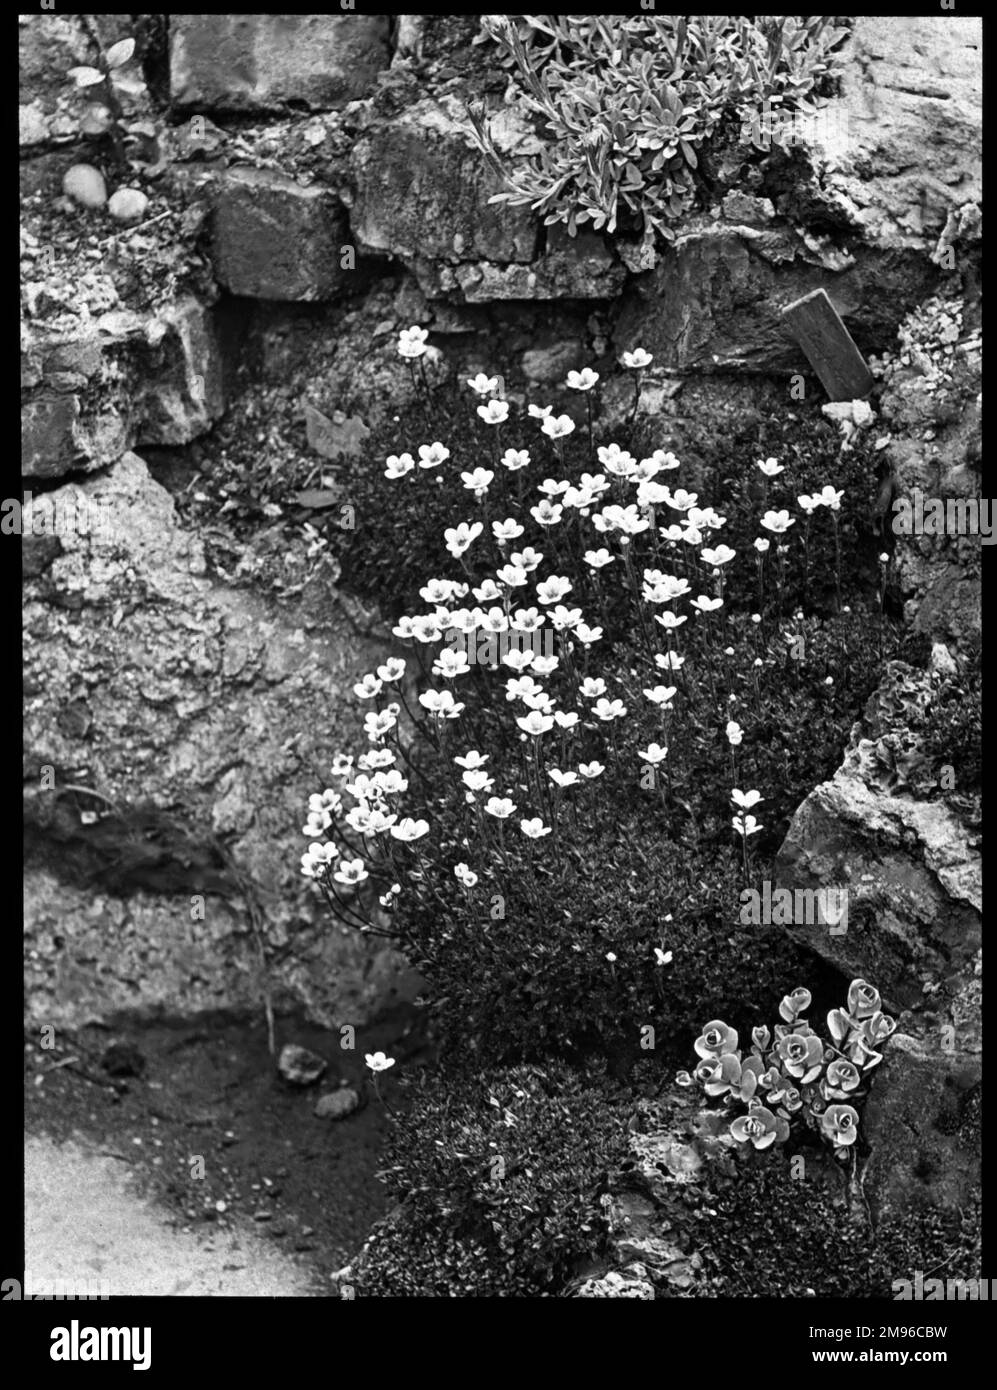 Saxifraga cespitosa (Tufted Saxifrage), eine blühende Pflanze der Familie der Saxifragaceae (gemeinhin als Saxifragen oder Steinbrecher bekannt, da sie in den Rissen zwischen den Felsen wachsen können). Hier in einer felsigen Umgebung gesehen. Stockfoto